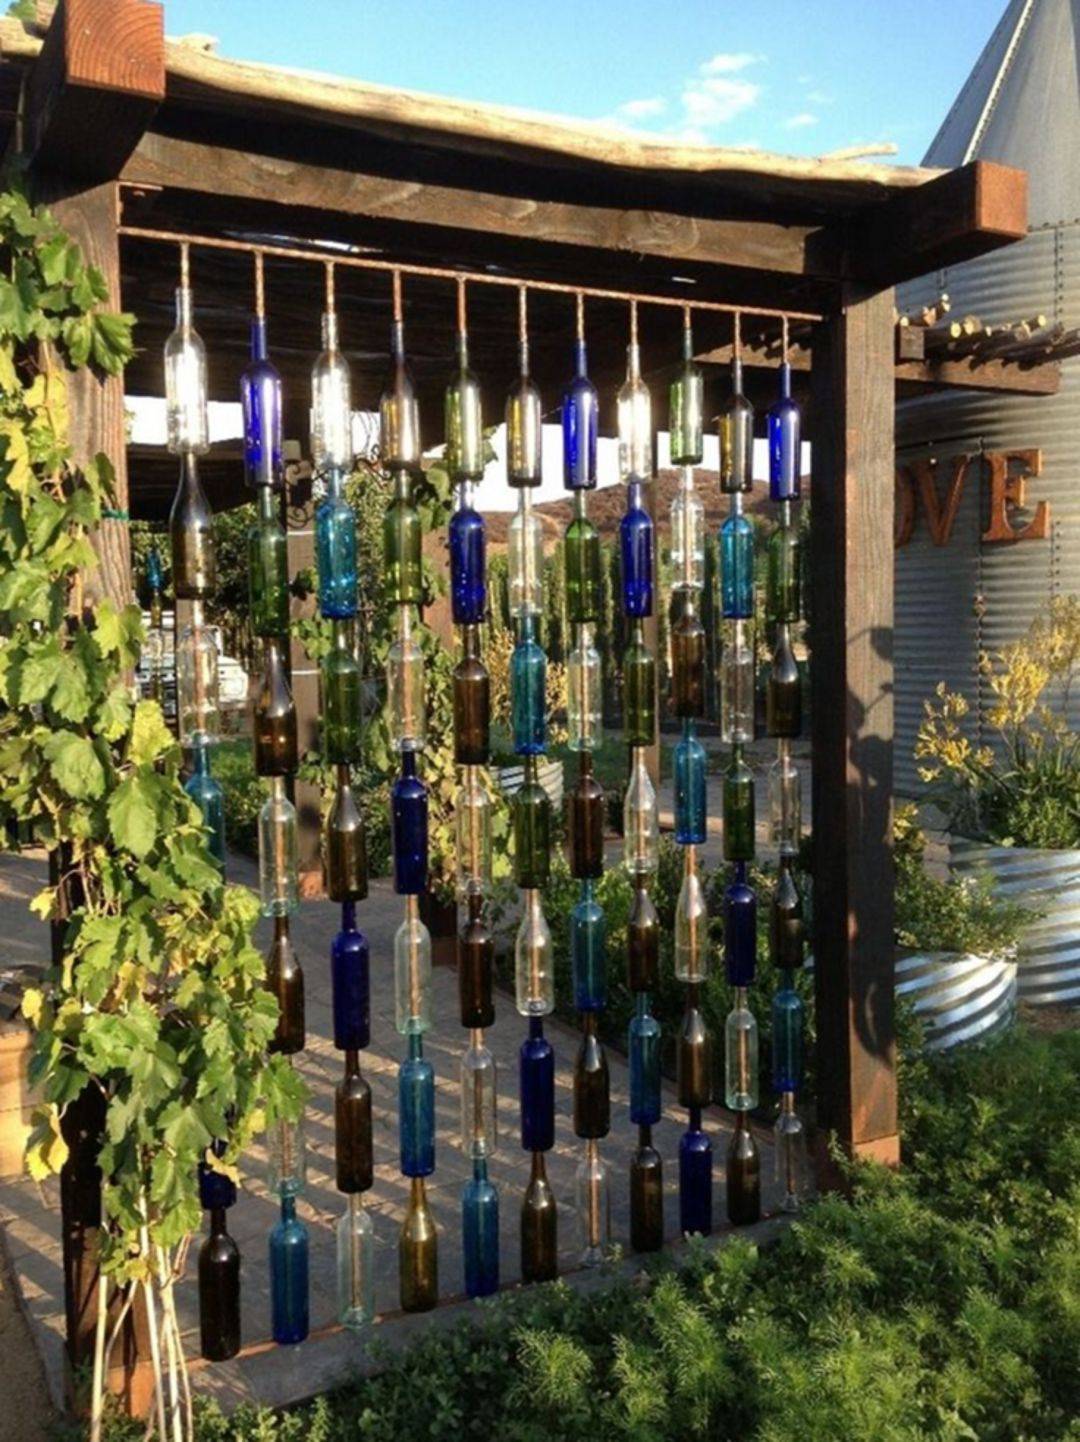 Glass Bottles Garden Decor